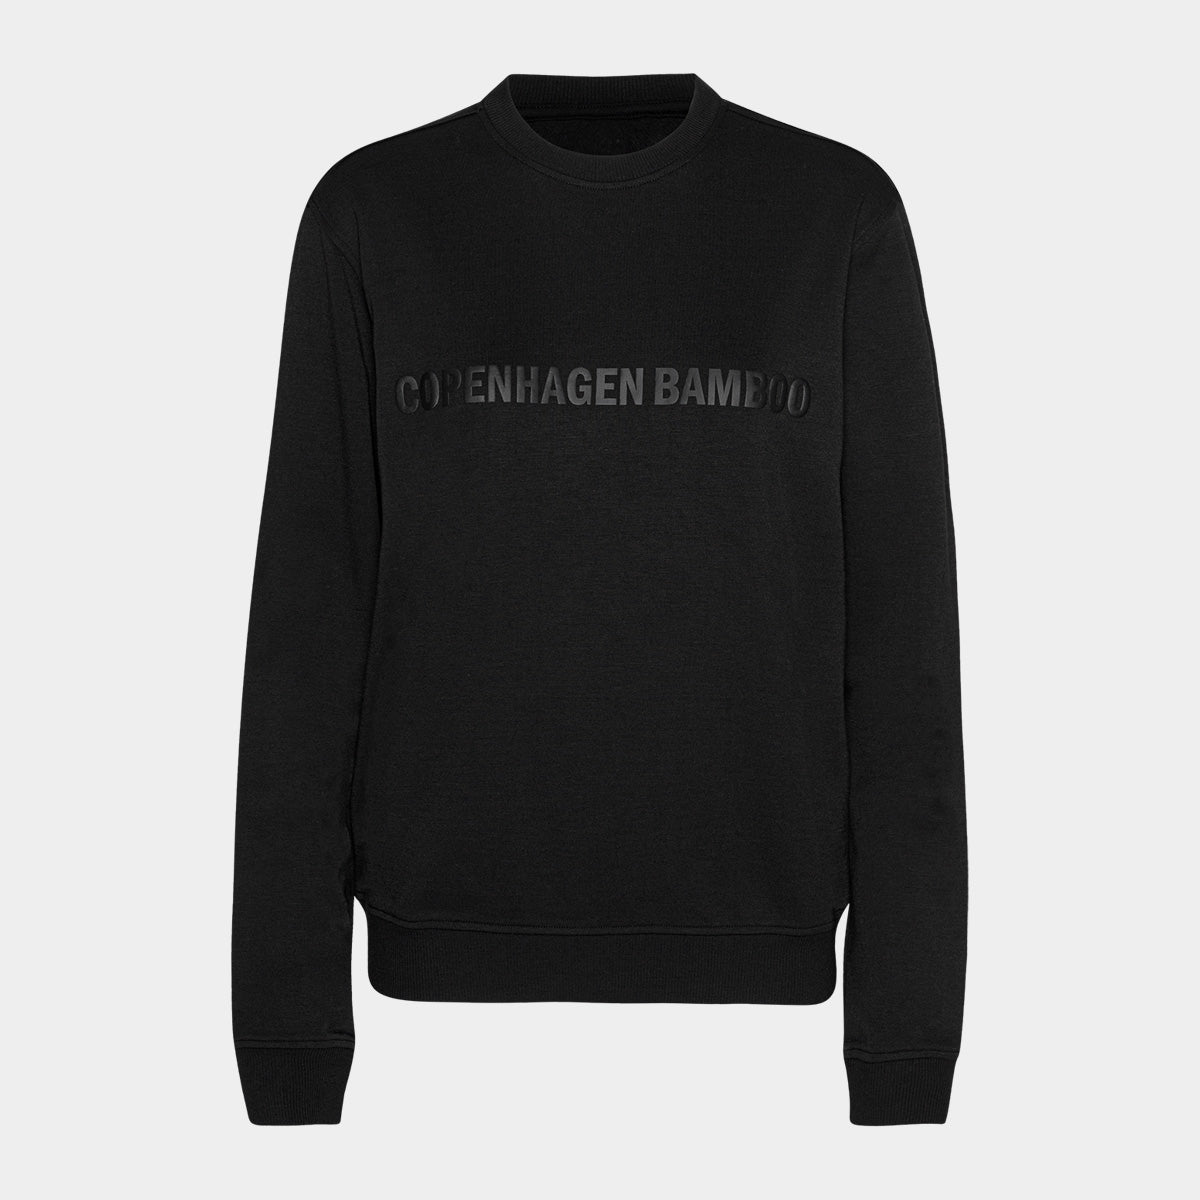 Se Sort bambus sweatshirt til mænd med logo fra Copenhagen Bamboo, L hos Bambustøj.dk